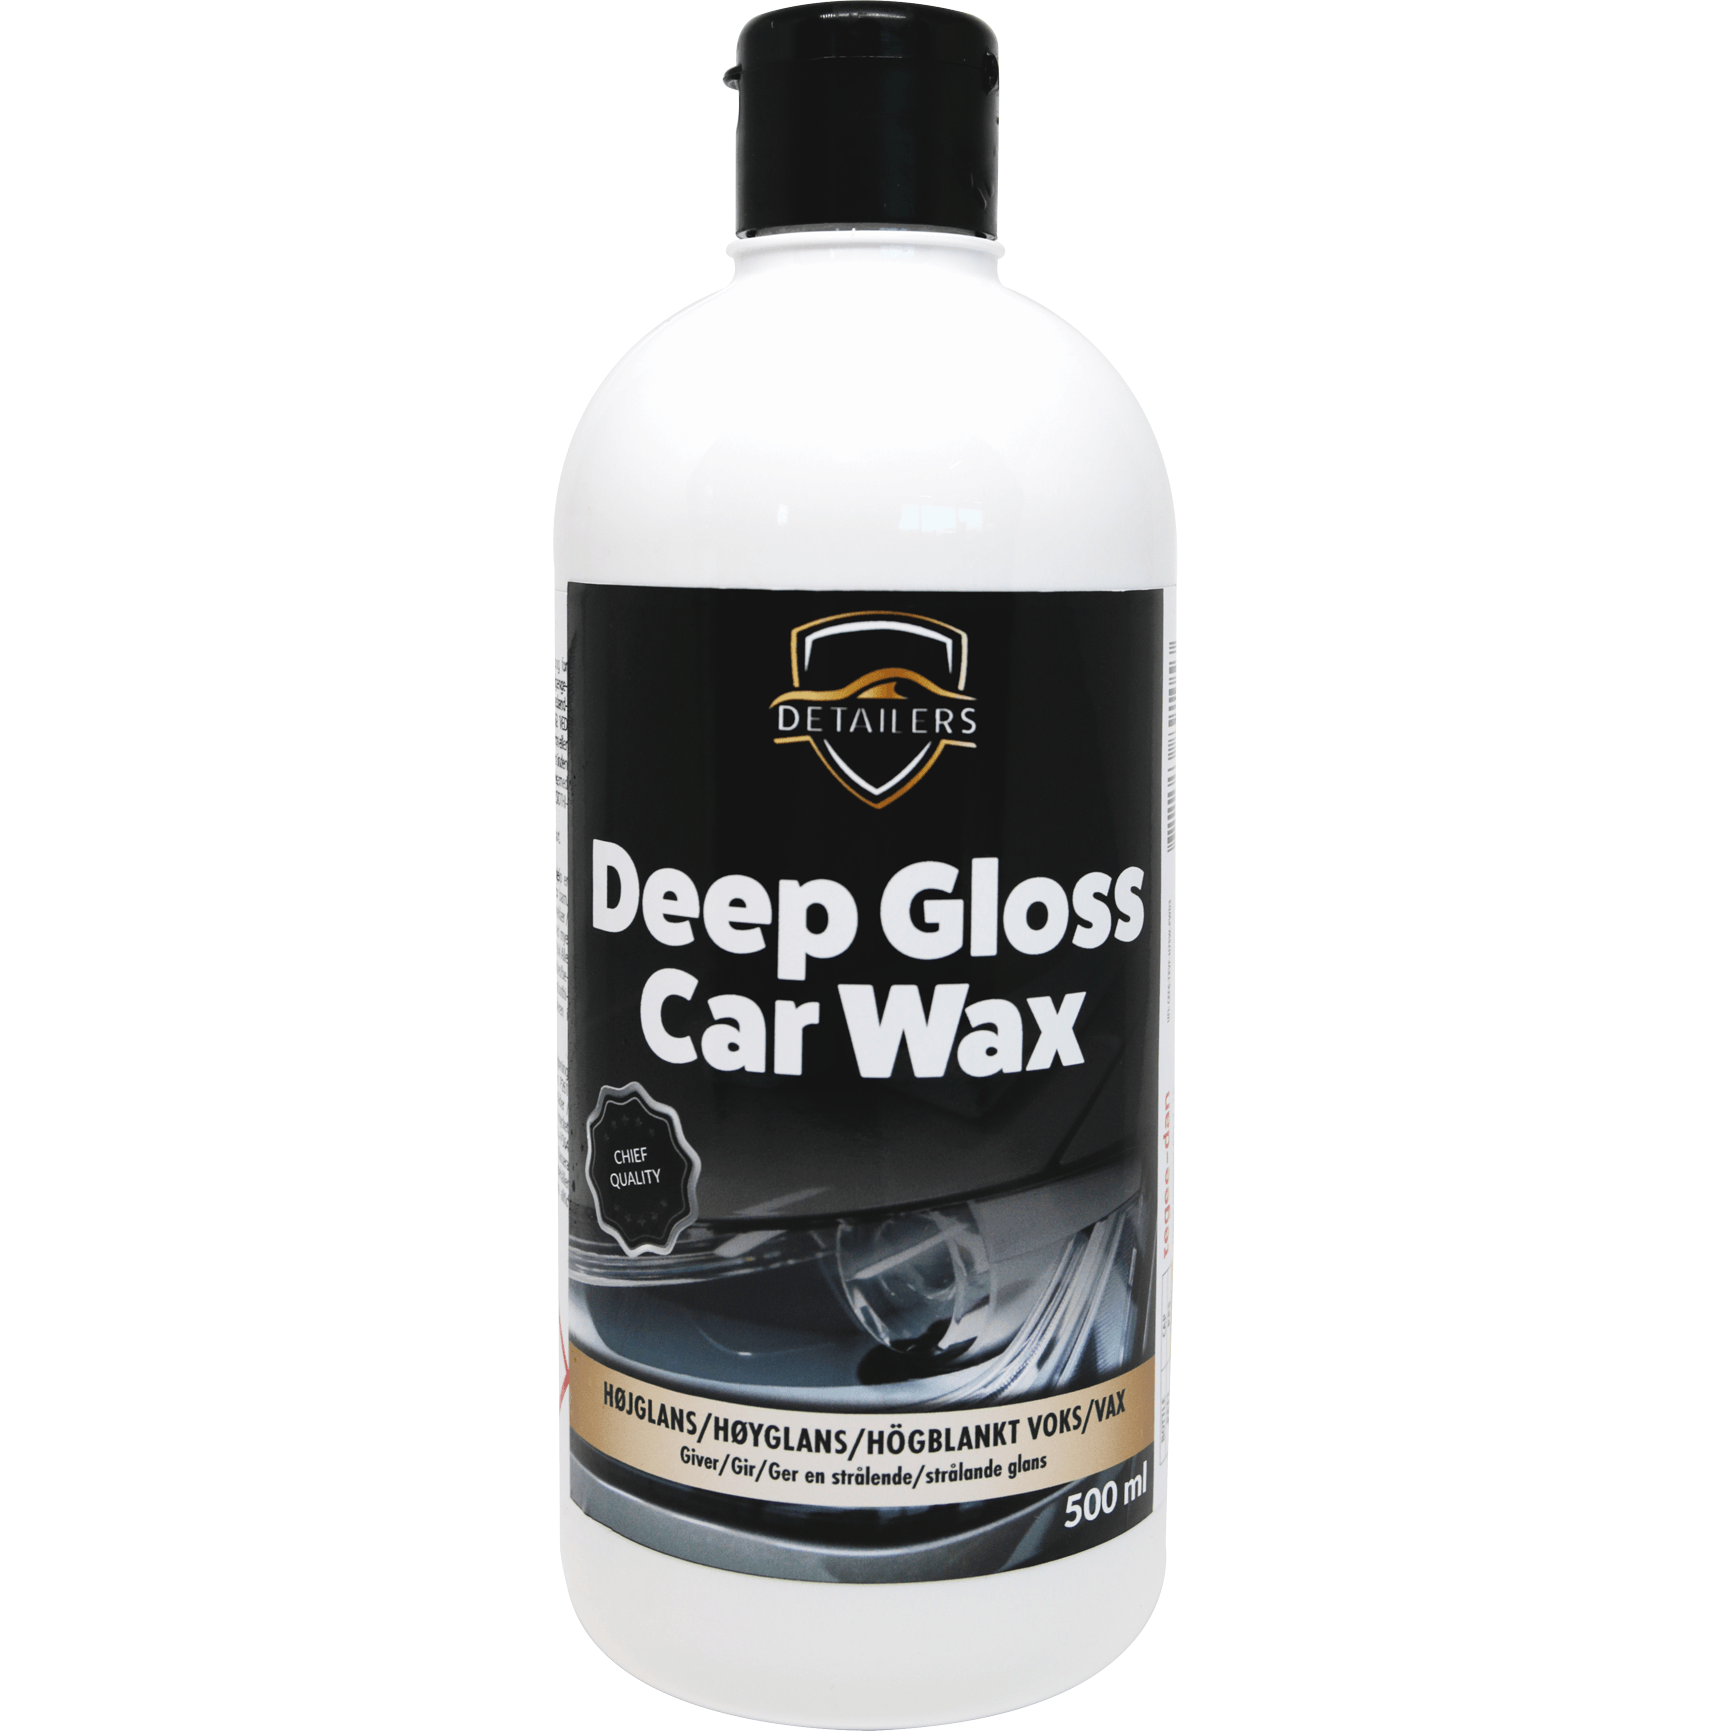 DETAILERS Deep Gloss Car Wax 500ml thumbnail